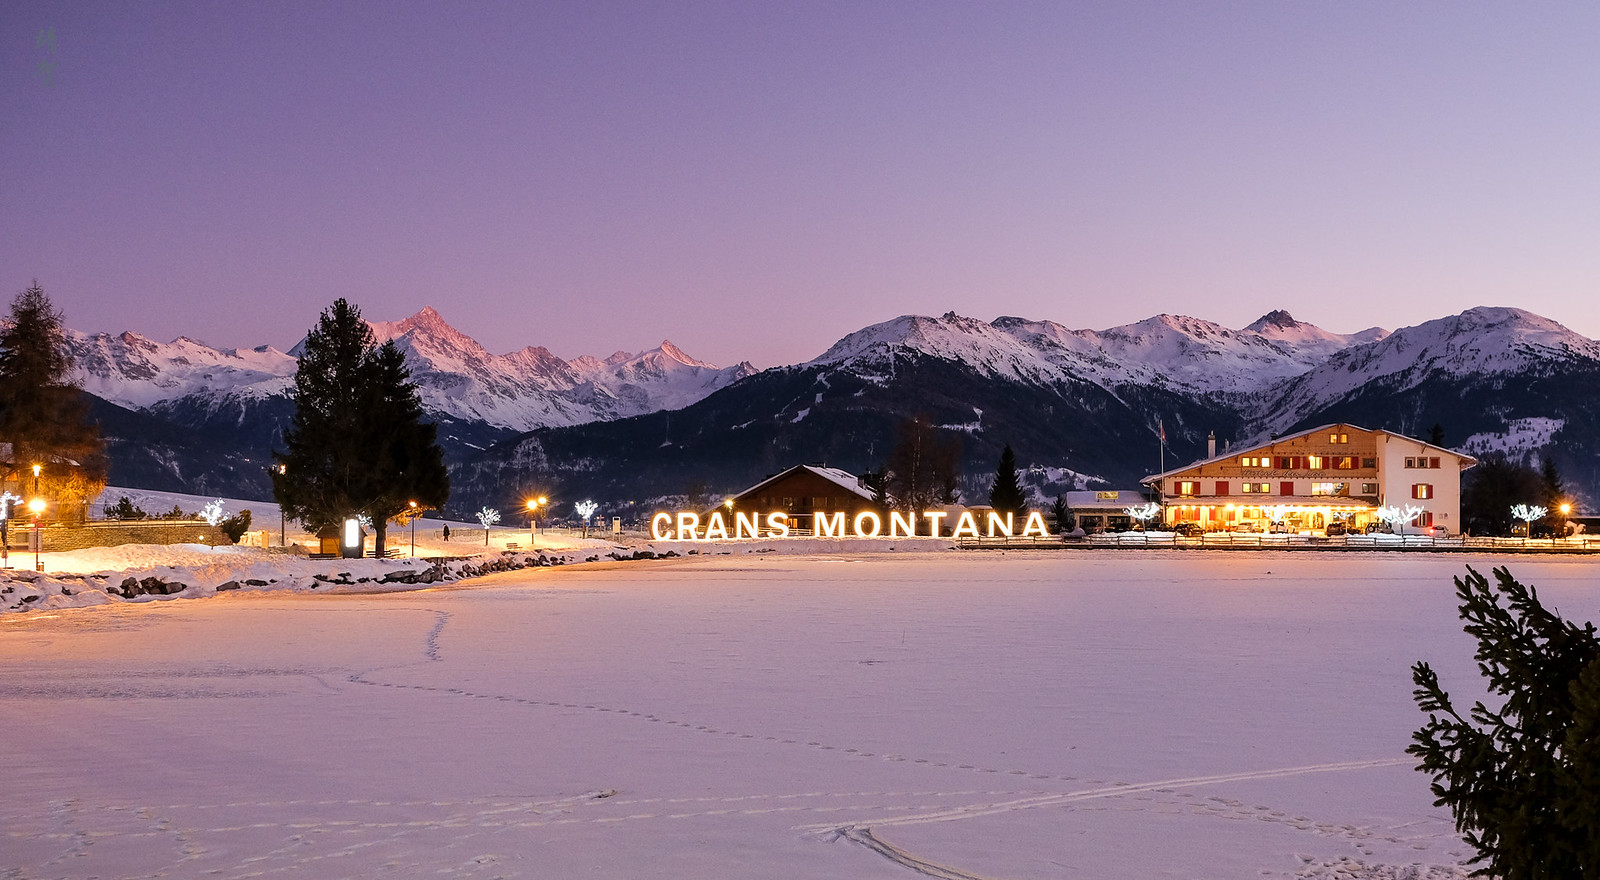 Crans Montana at dusk